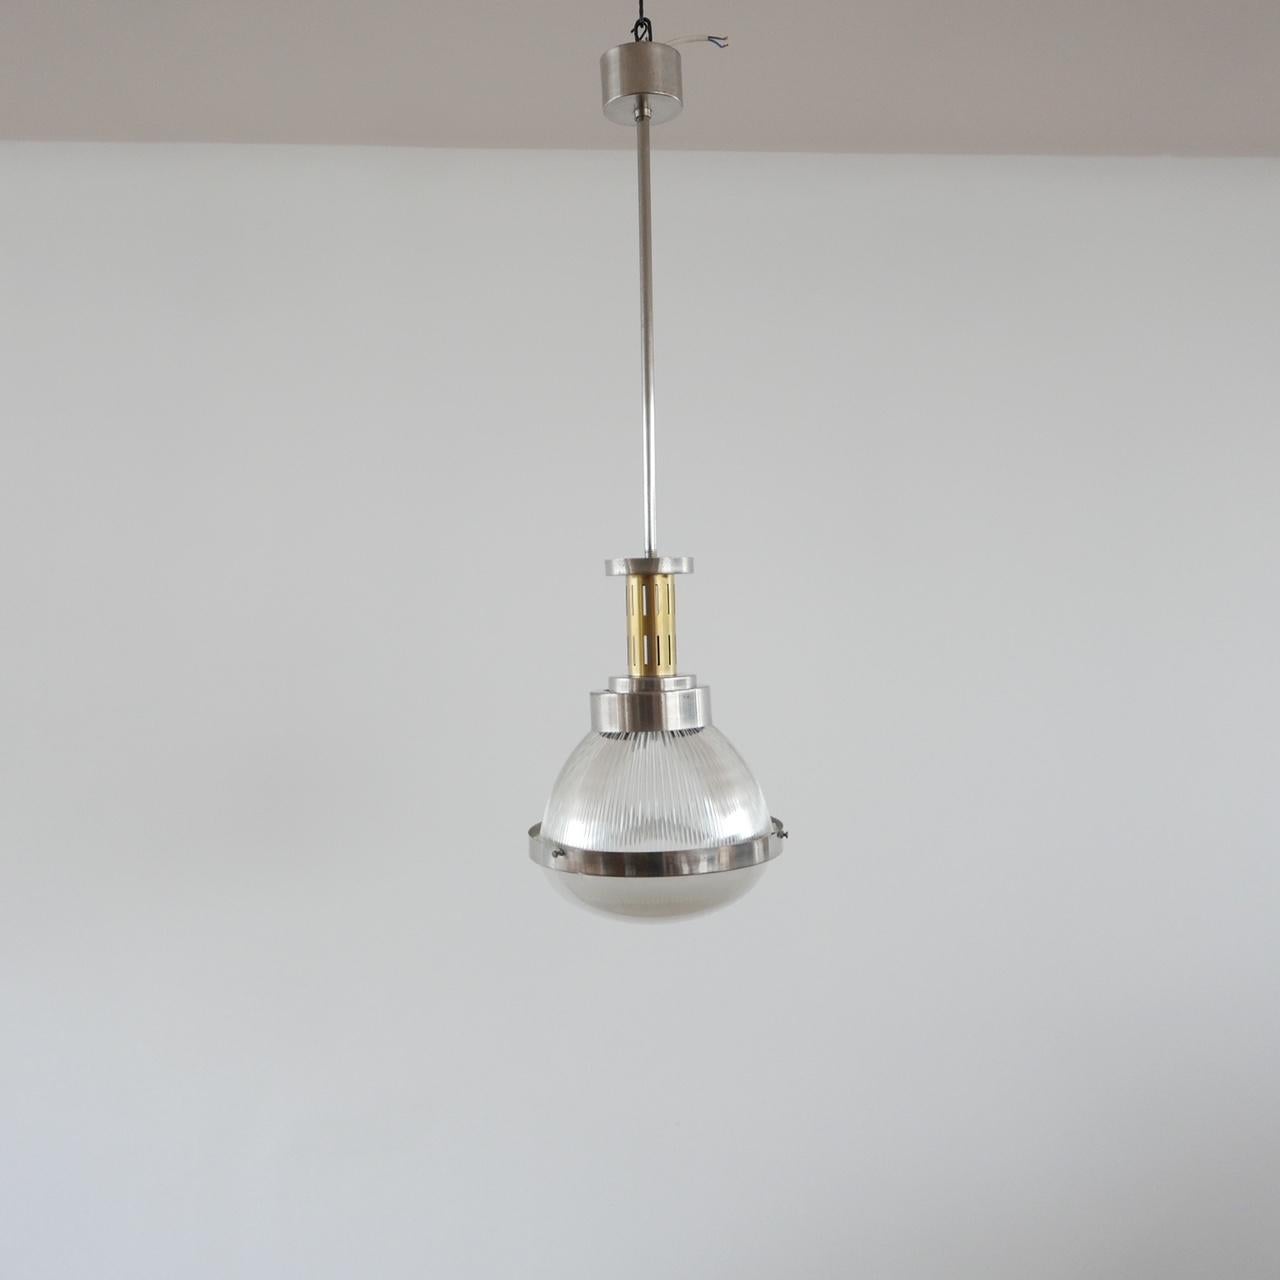 Italian Pendant Light Attributed to Ignazio Gardella For Sale 3